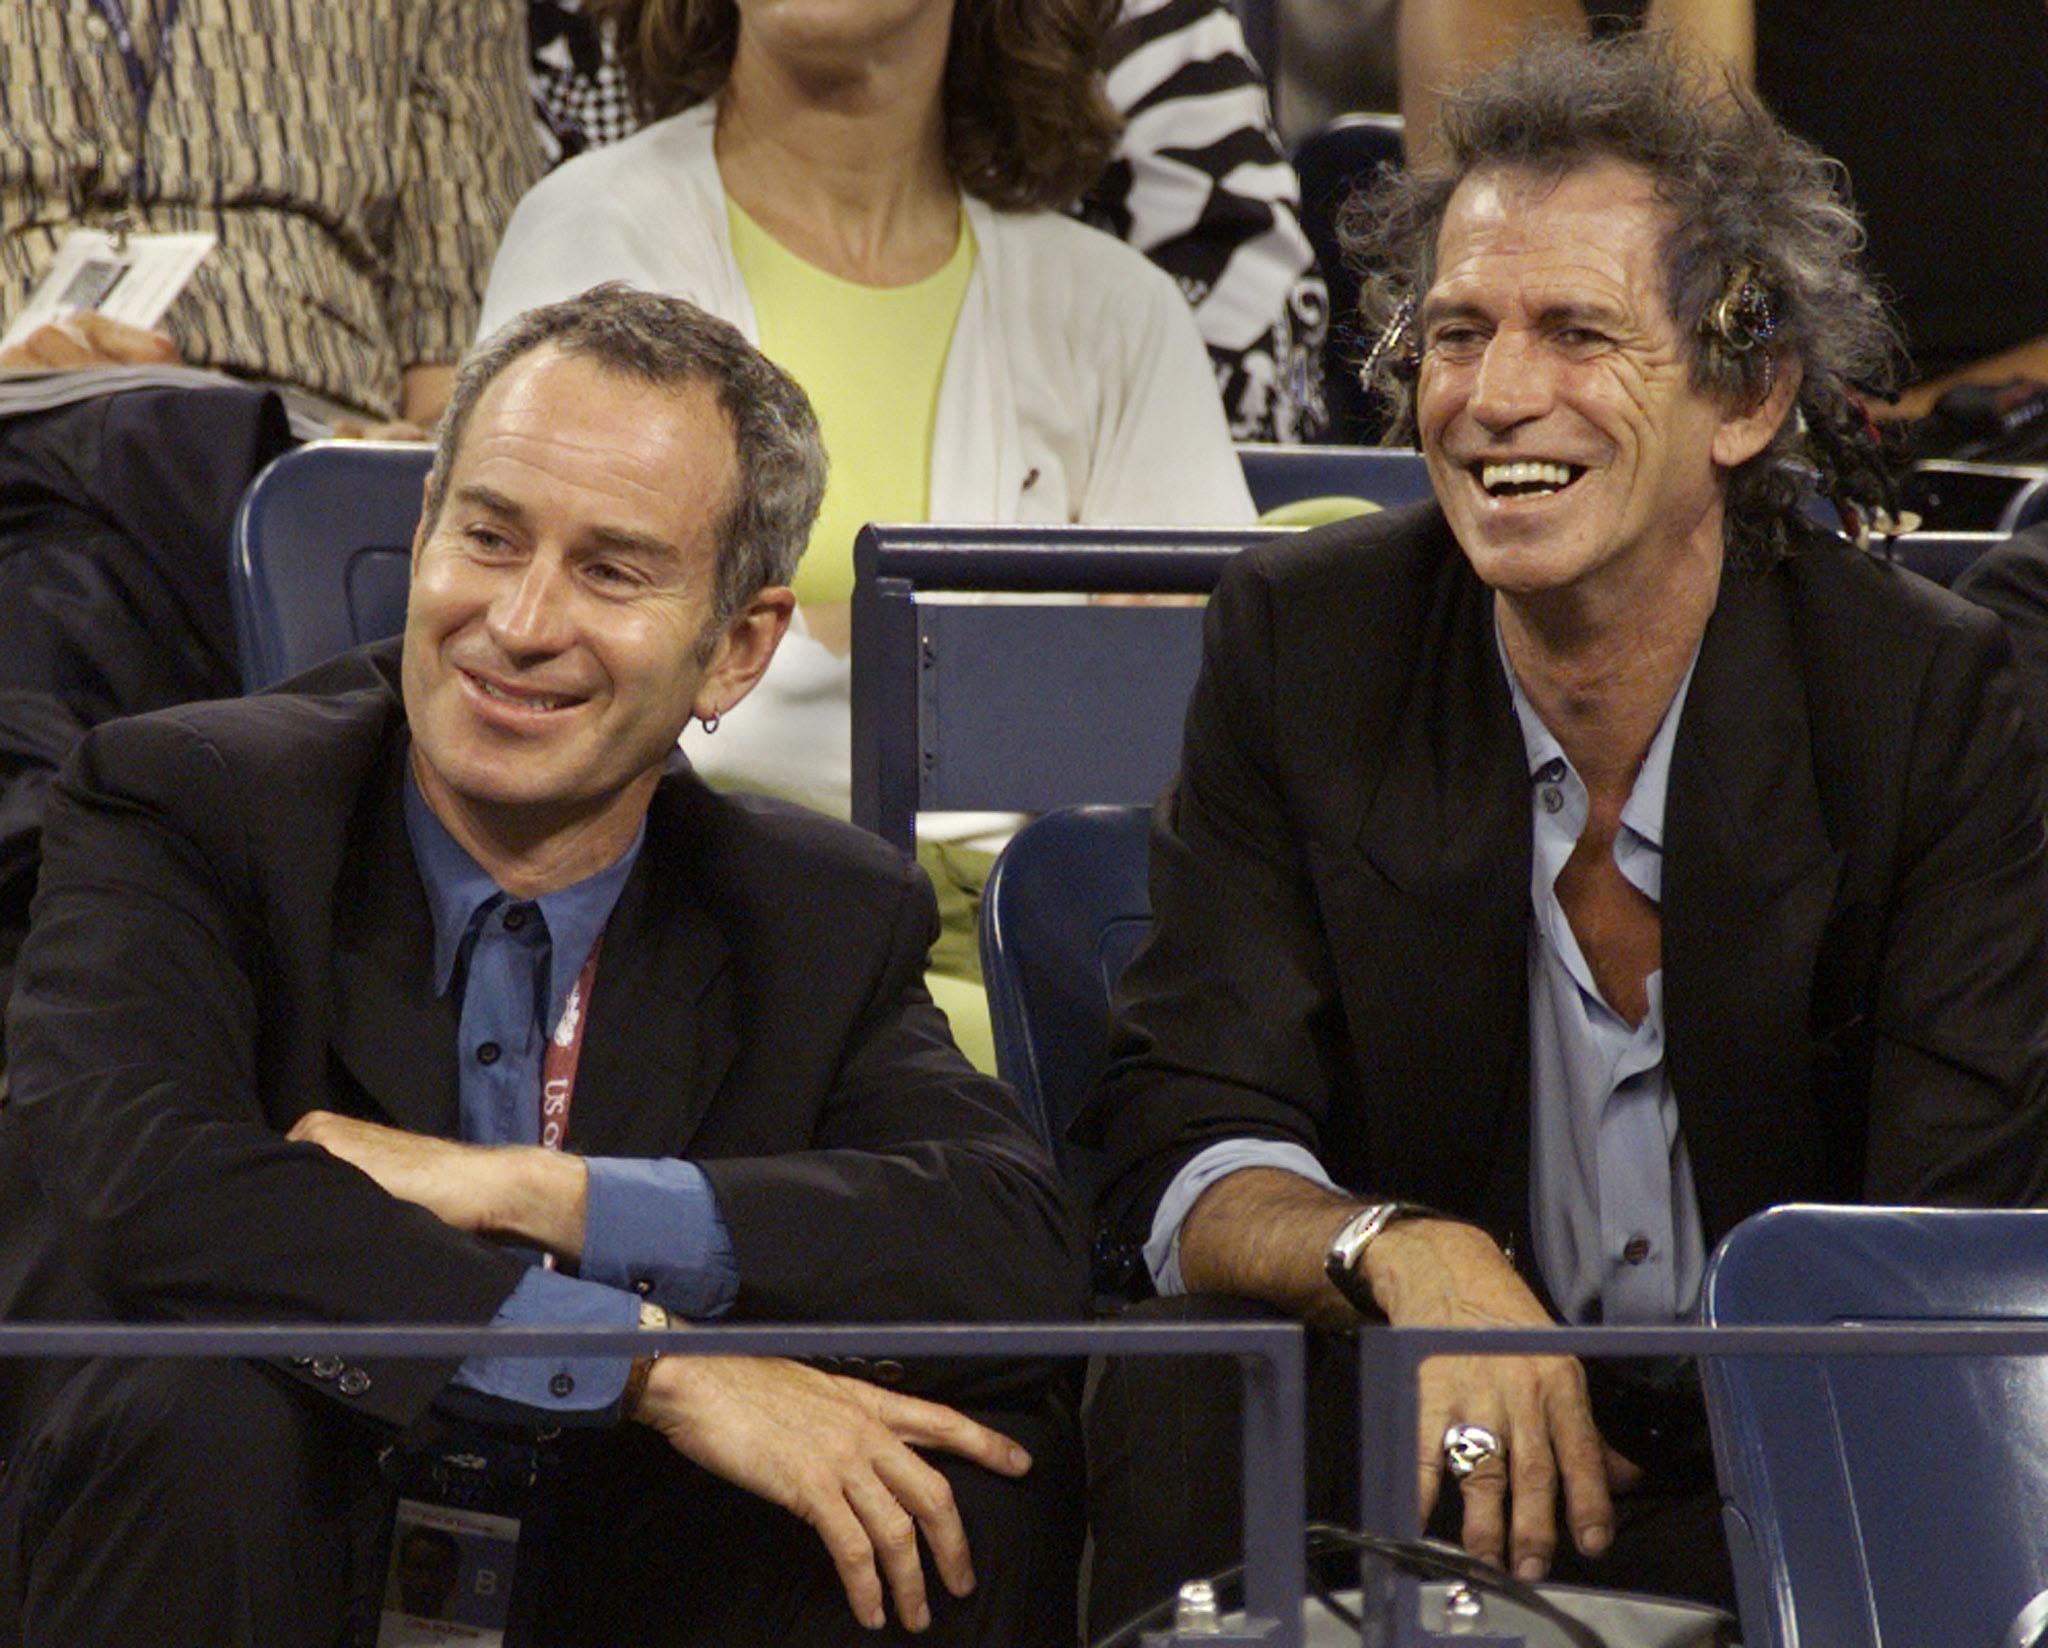 McEnroe and Richards